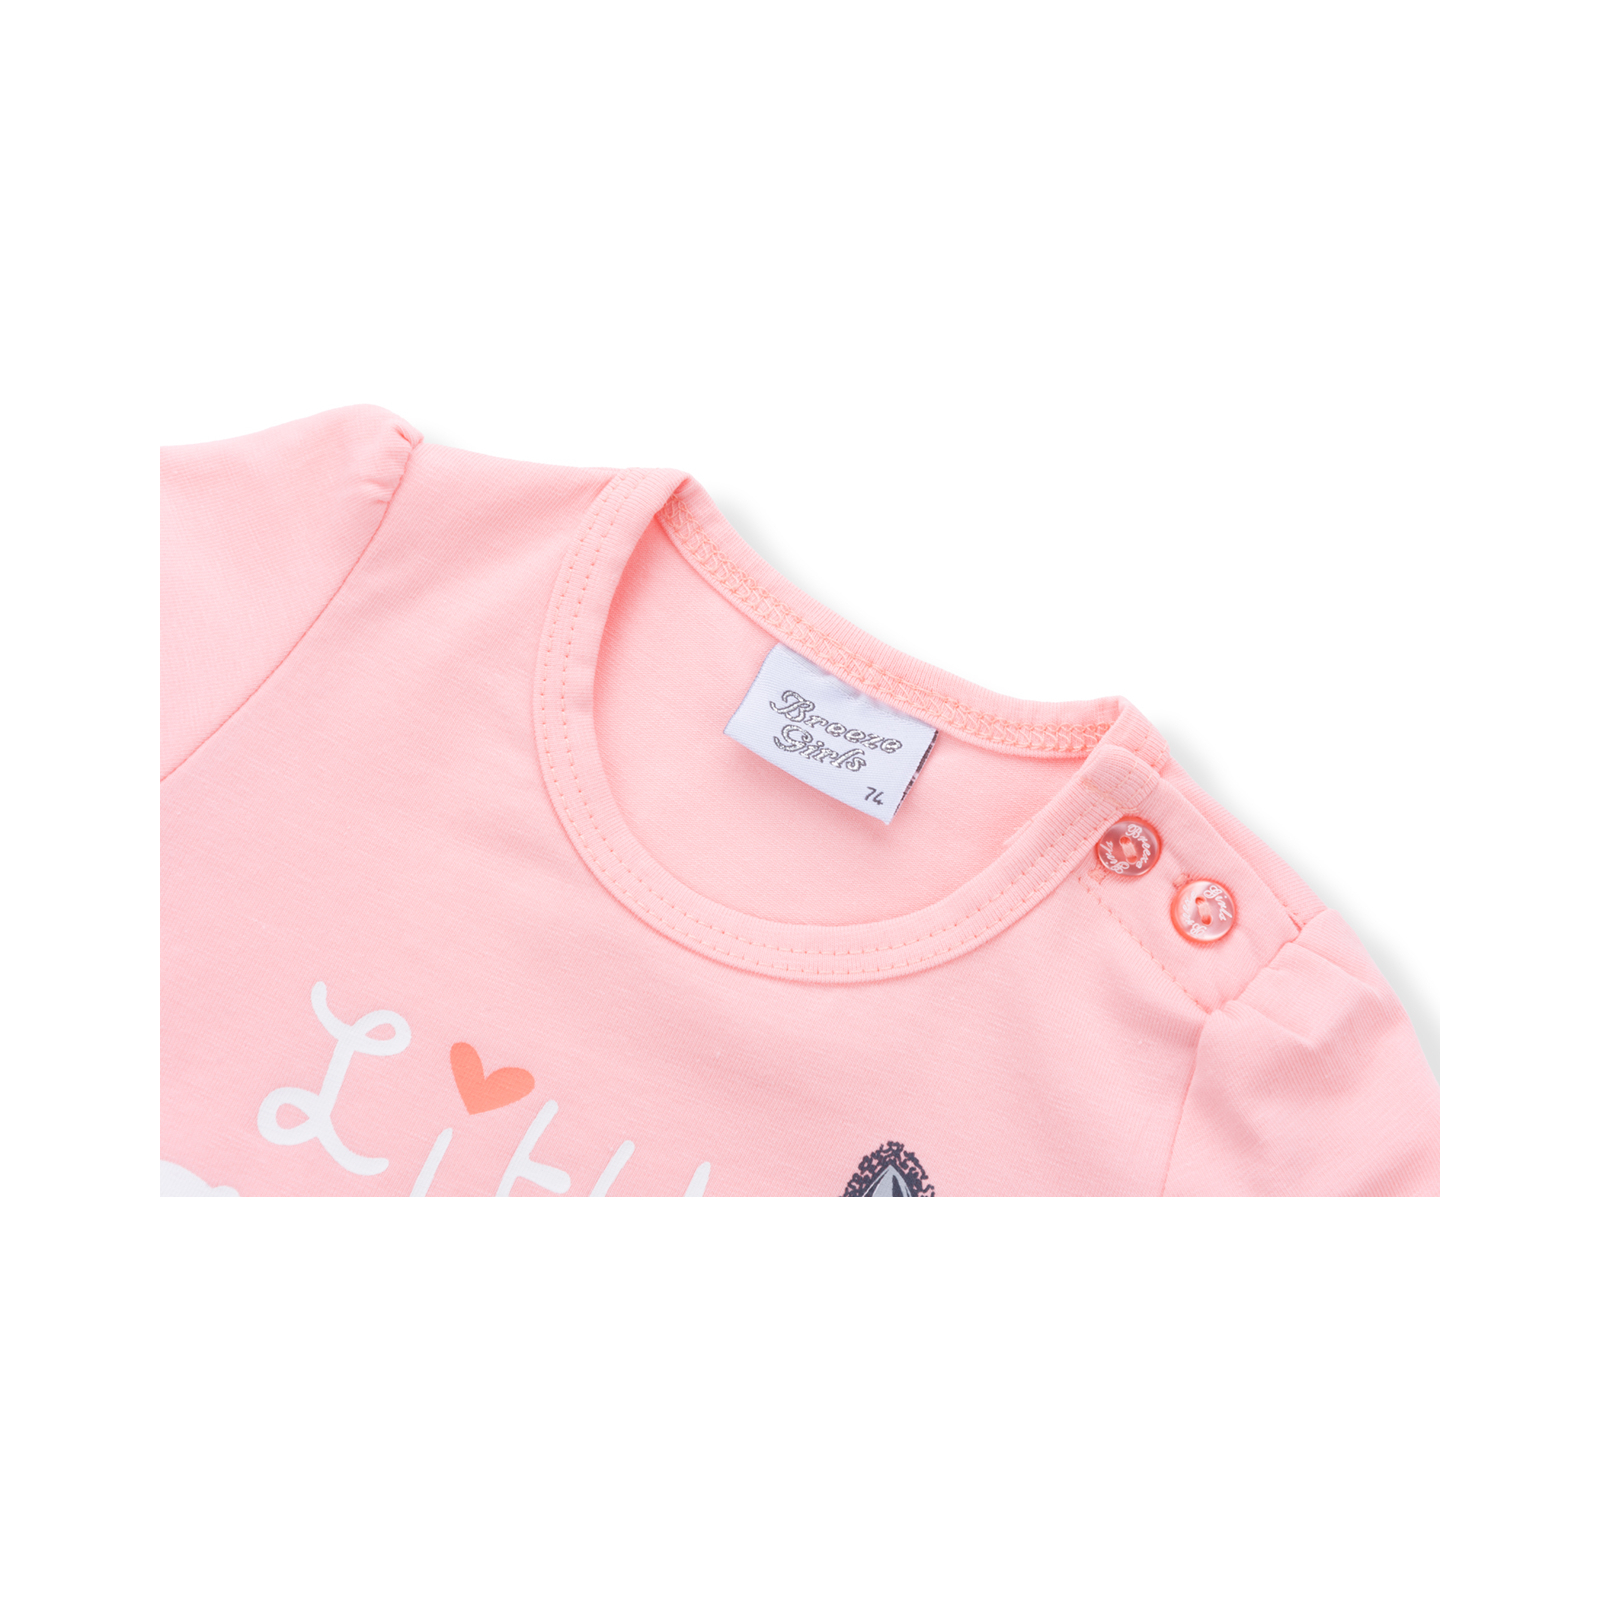 Набор детской одежды Breeze футболка с котиком и штанишки с кармашками (8983-80G-peach) изображение 5